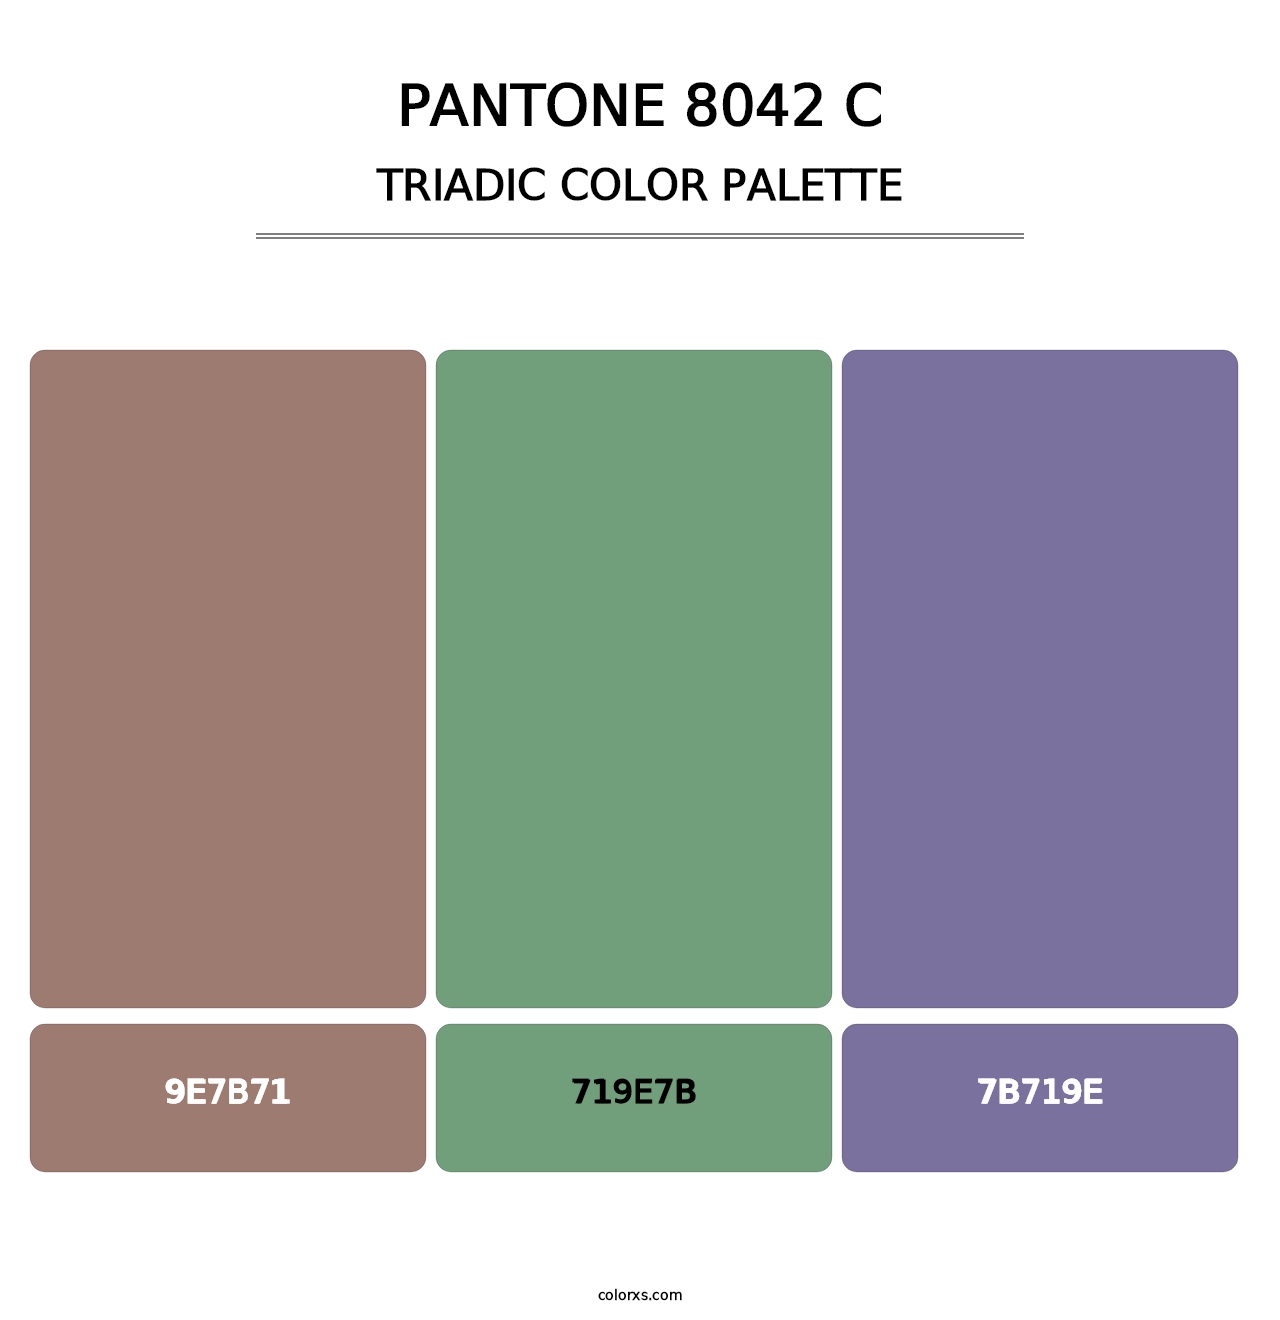 PANTONE 8042 C - Triadic Color Palette